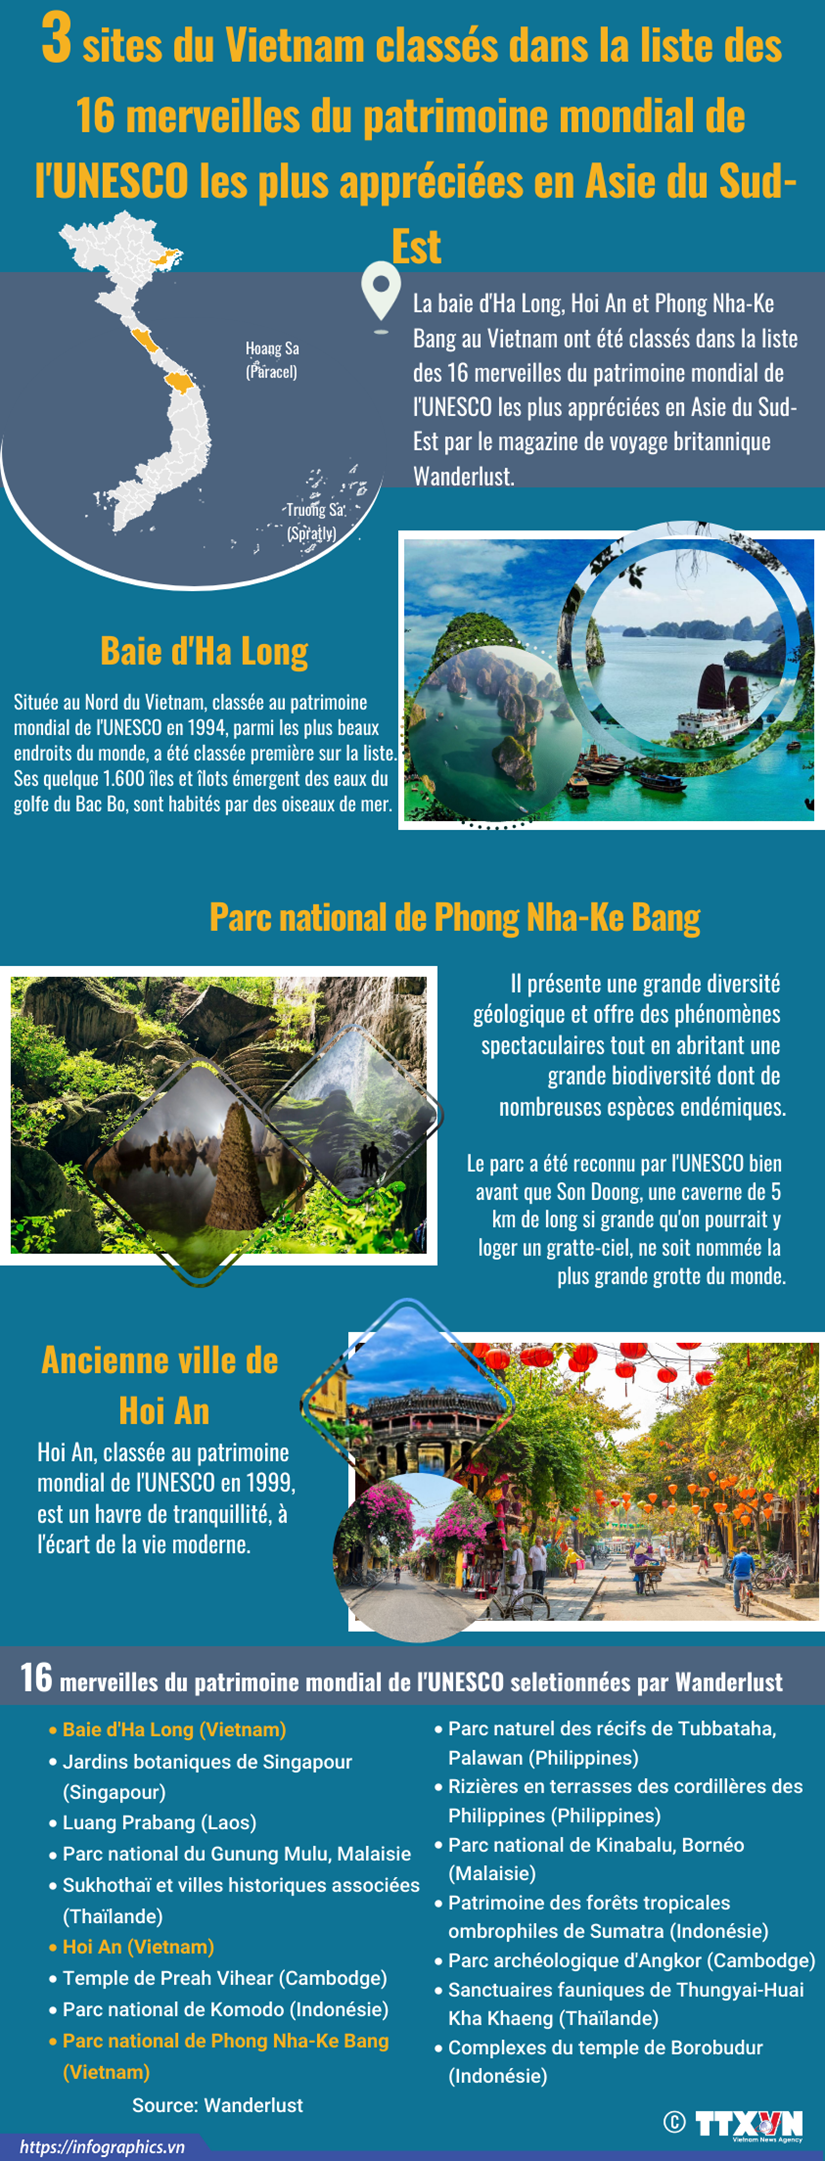 Le Vietnam possede trois sites les plus apprecies en Asie du Sud-Est hinh anh 1